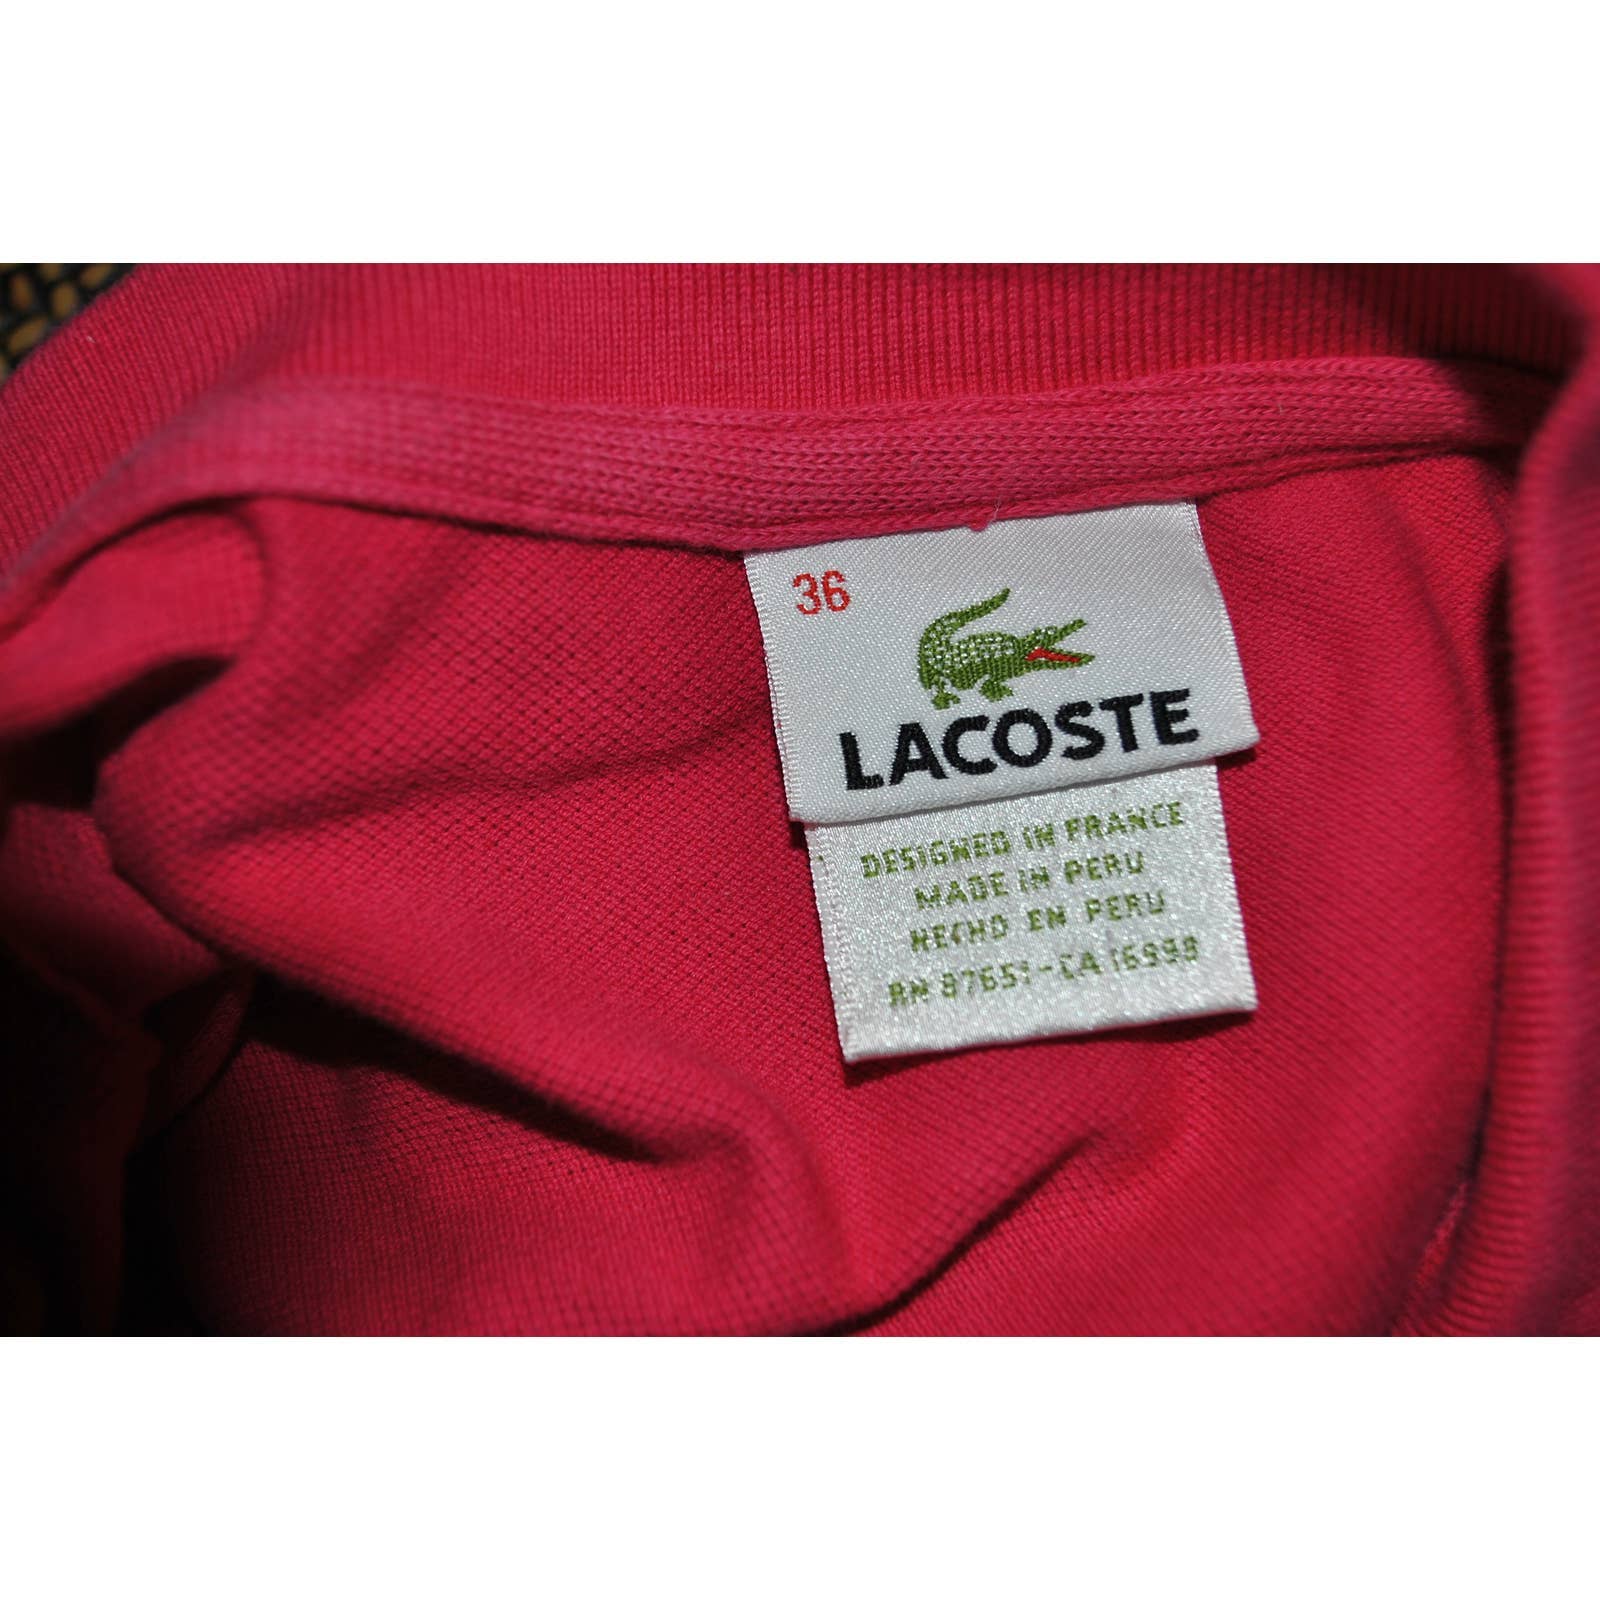 Lacoste Pink Cap Sleeve Pique Polo Shirt - 36 (S)